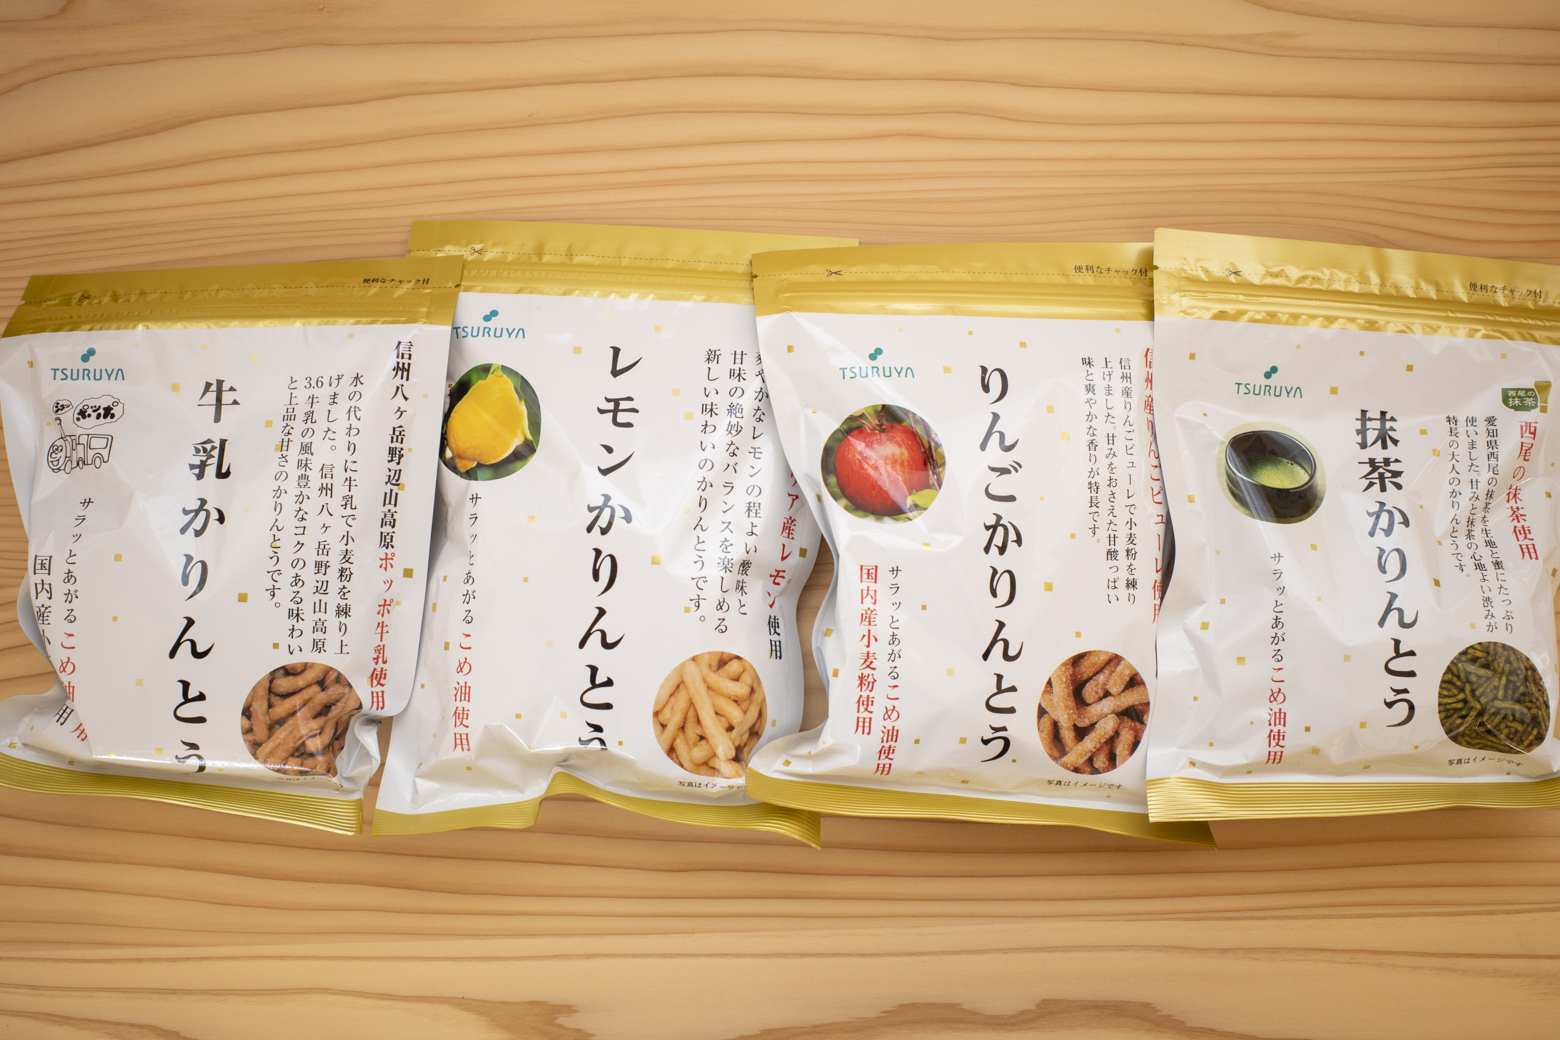 長野県のご当地スーパー【ツルヤ】で買える、お土産や登山行動食にオススメの商品たち | Green Nature Note - グリーンネイチャーノート